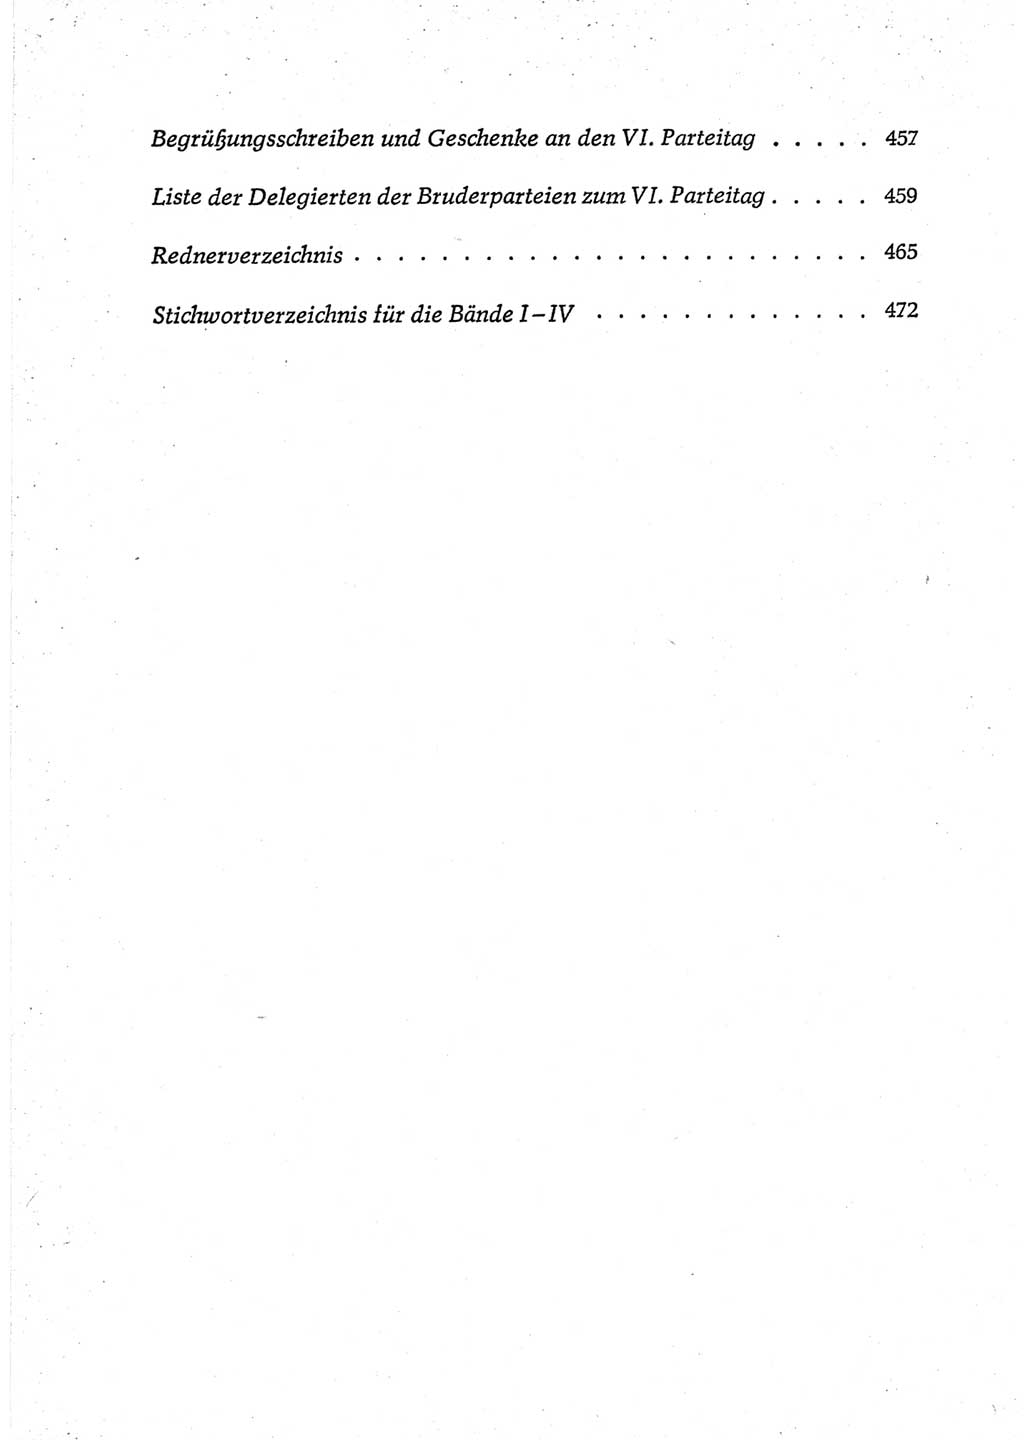 Protokoll der Verhandlungen des Ⅵ. Parteitages der Sozialistischen Einheitspartei Deutschlands (SED) [Deutsche Demokratische Republik (DDR)] 1963, Band Ⅳ, Seite 544 (Prot. Verh. Ⅵ. PT SED DDR 1963, Bd. Ⅳ, S. 544)